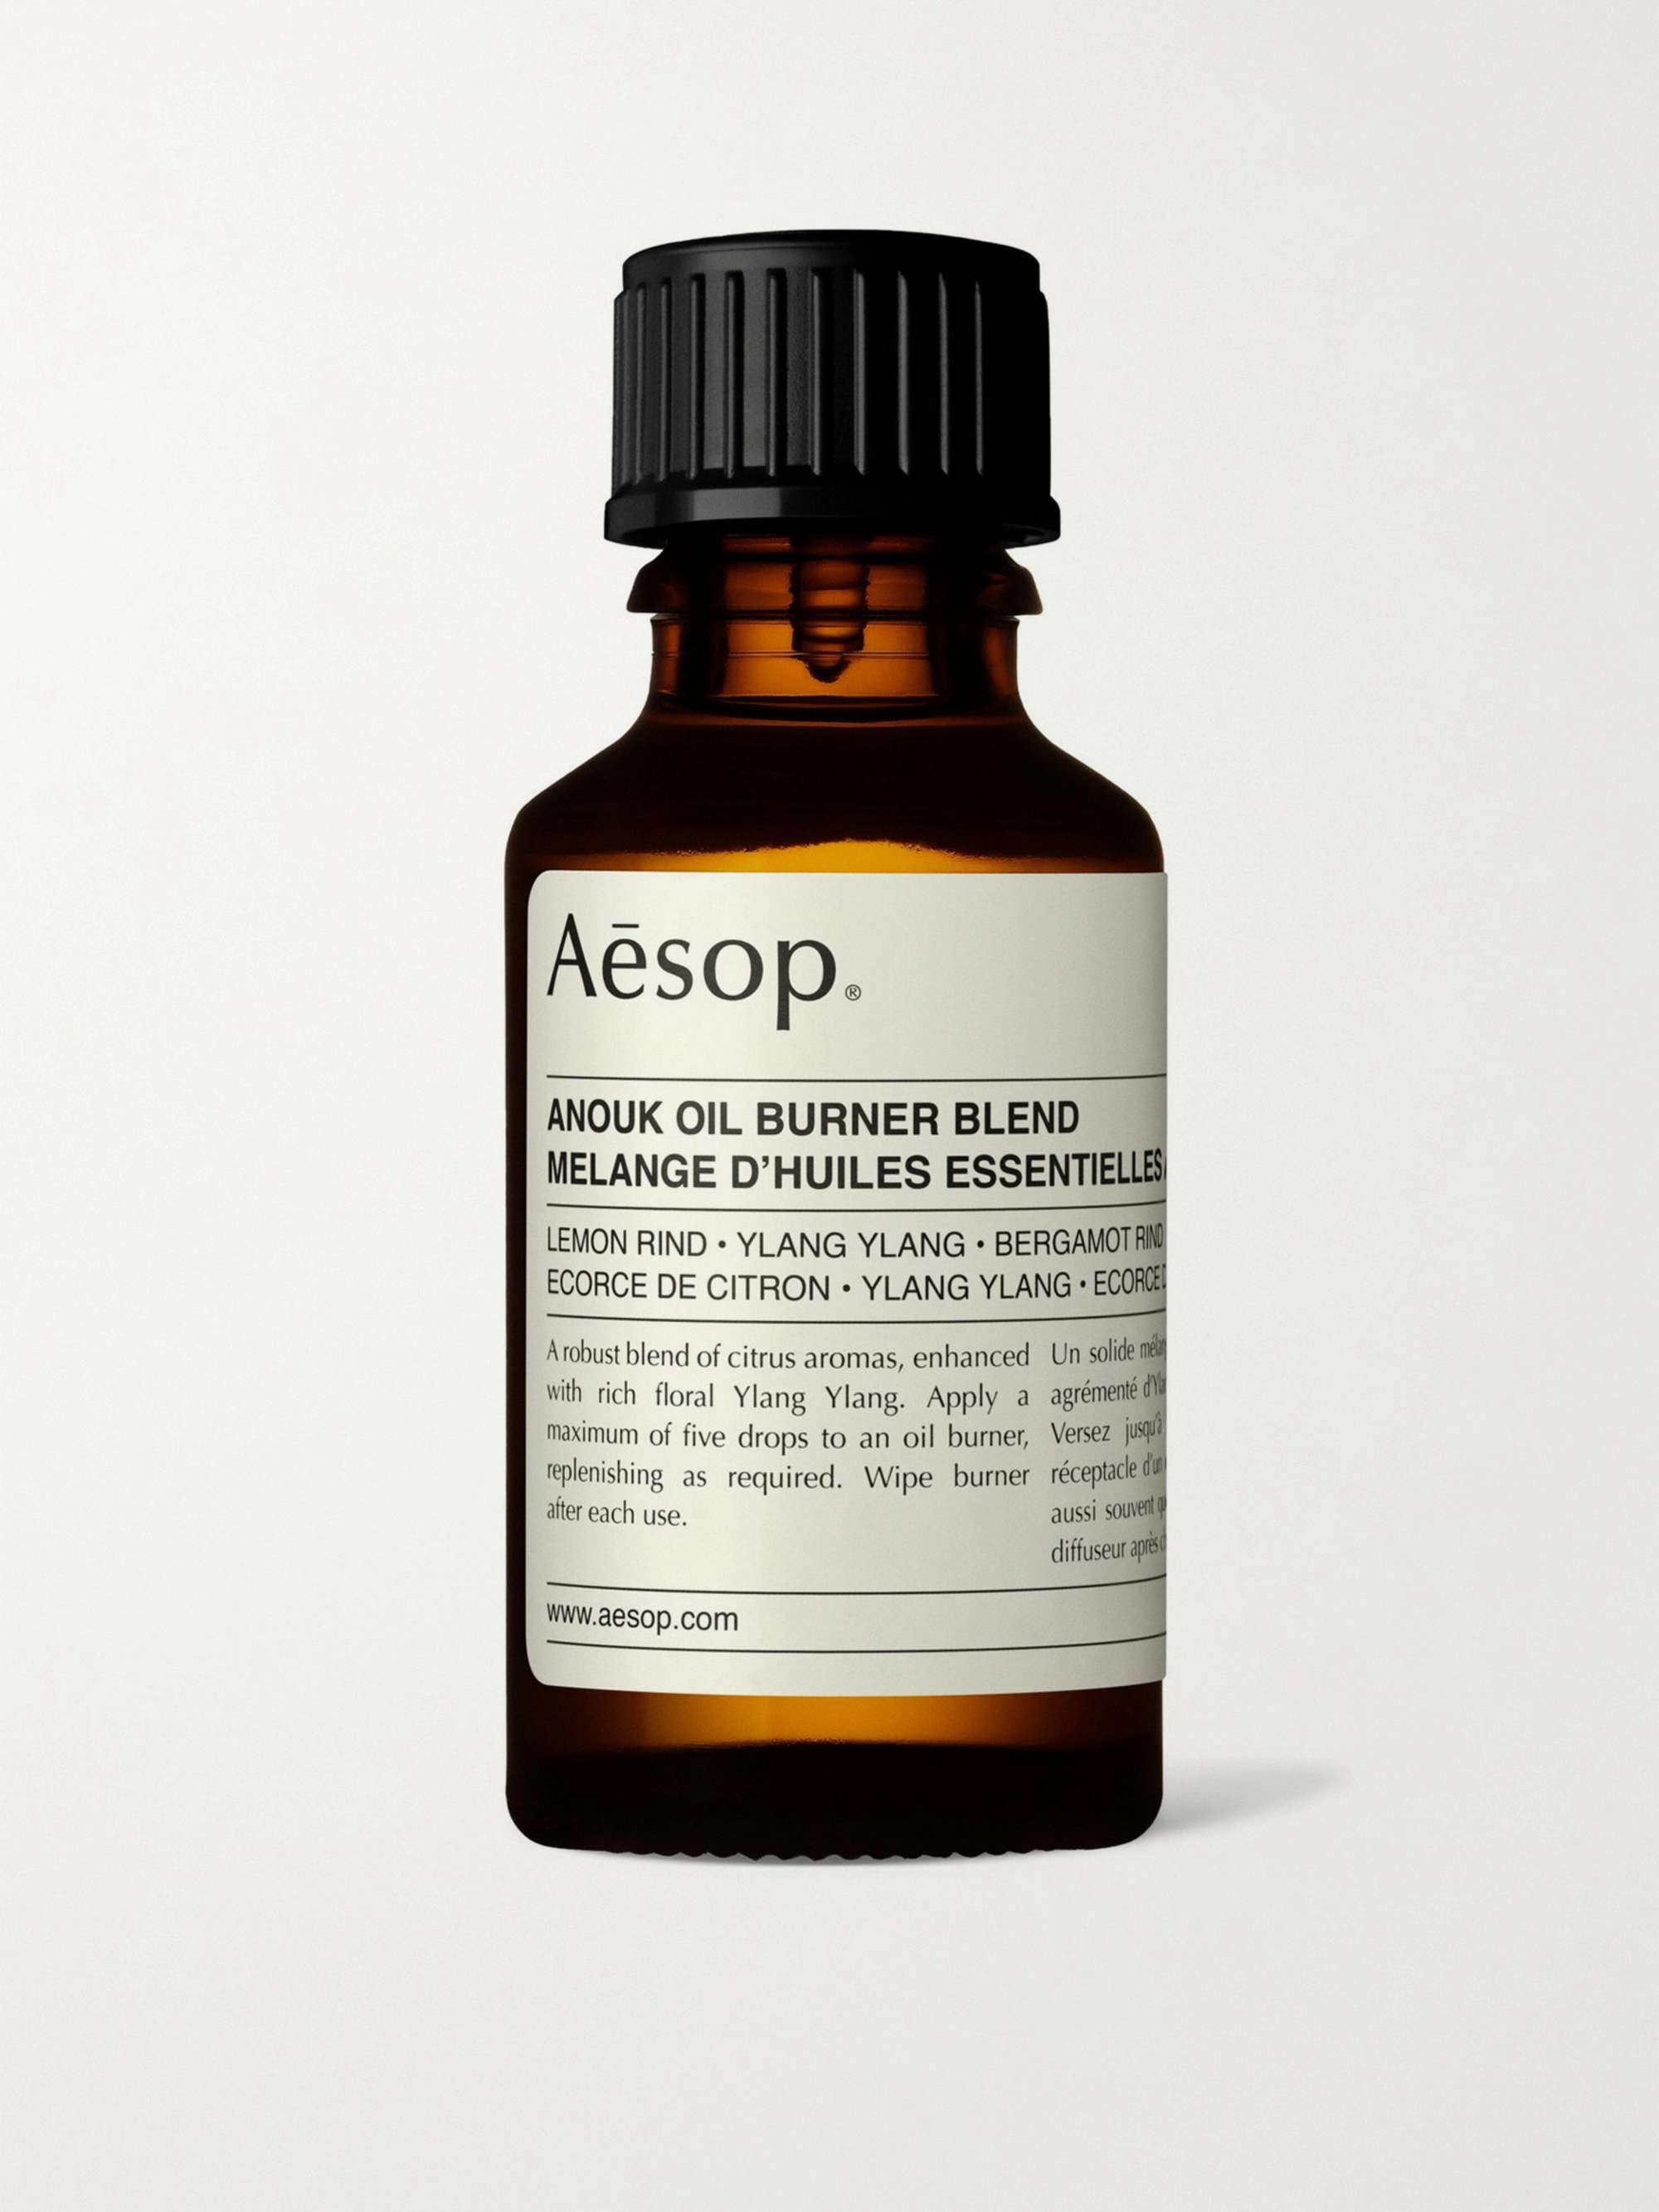 AESOP Oil Burner Blend - Anouk, 25ml